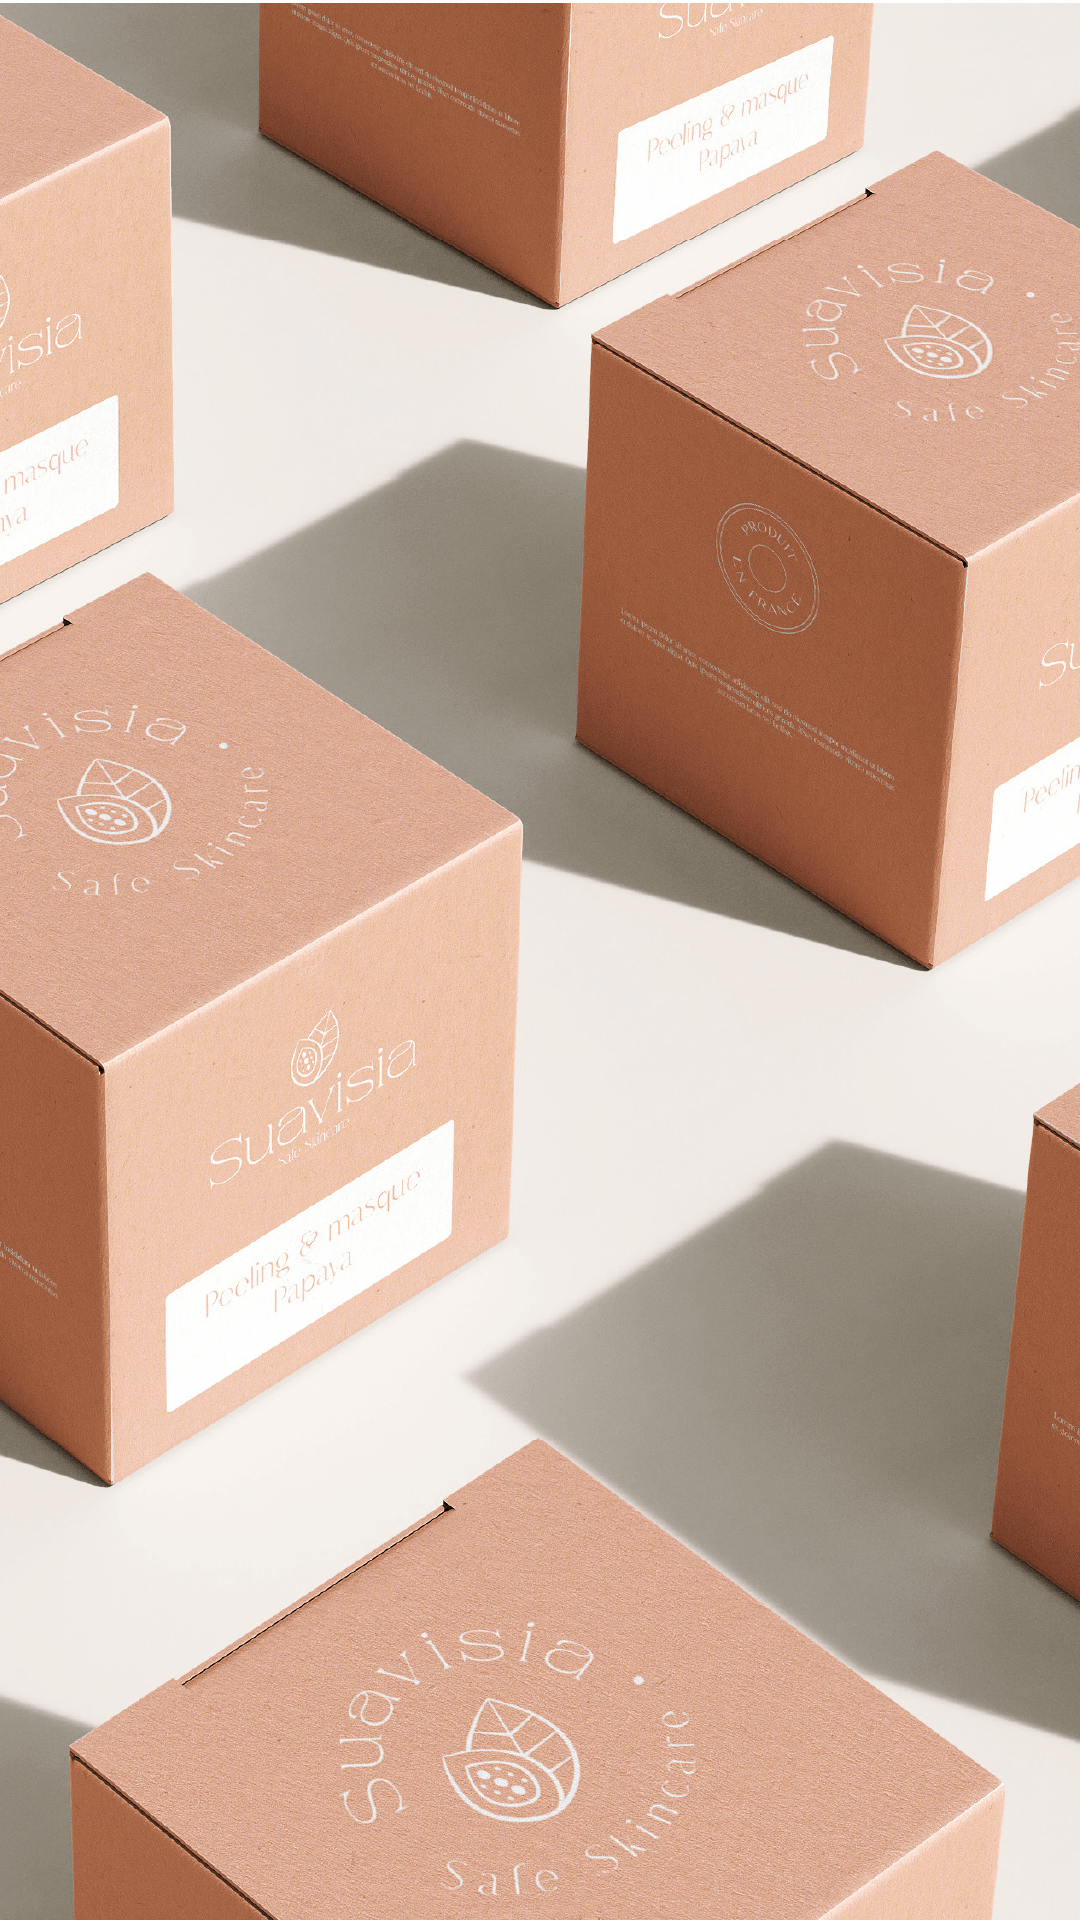 Création du packaging de Suavisia, marque de cosmétique française